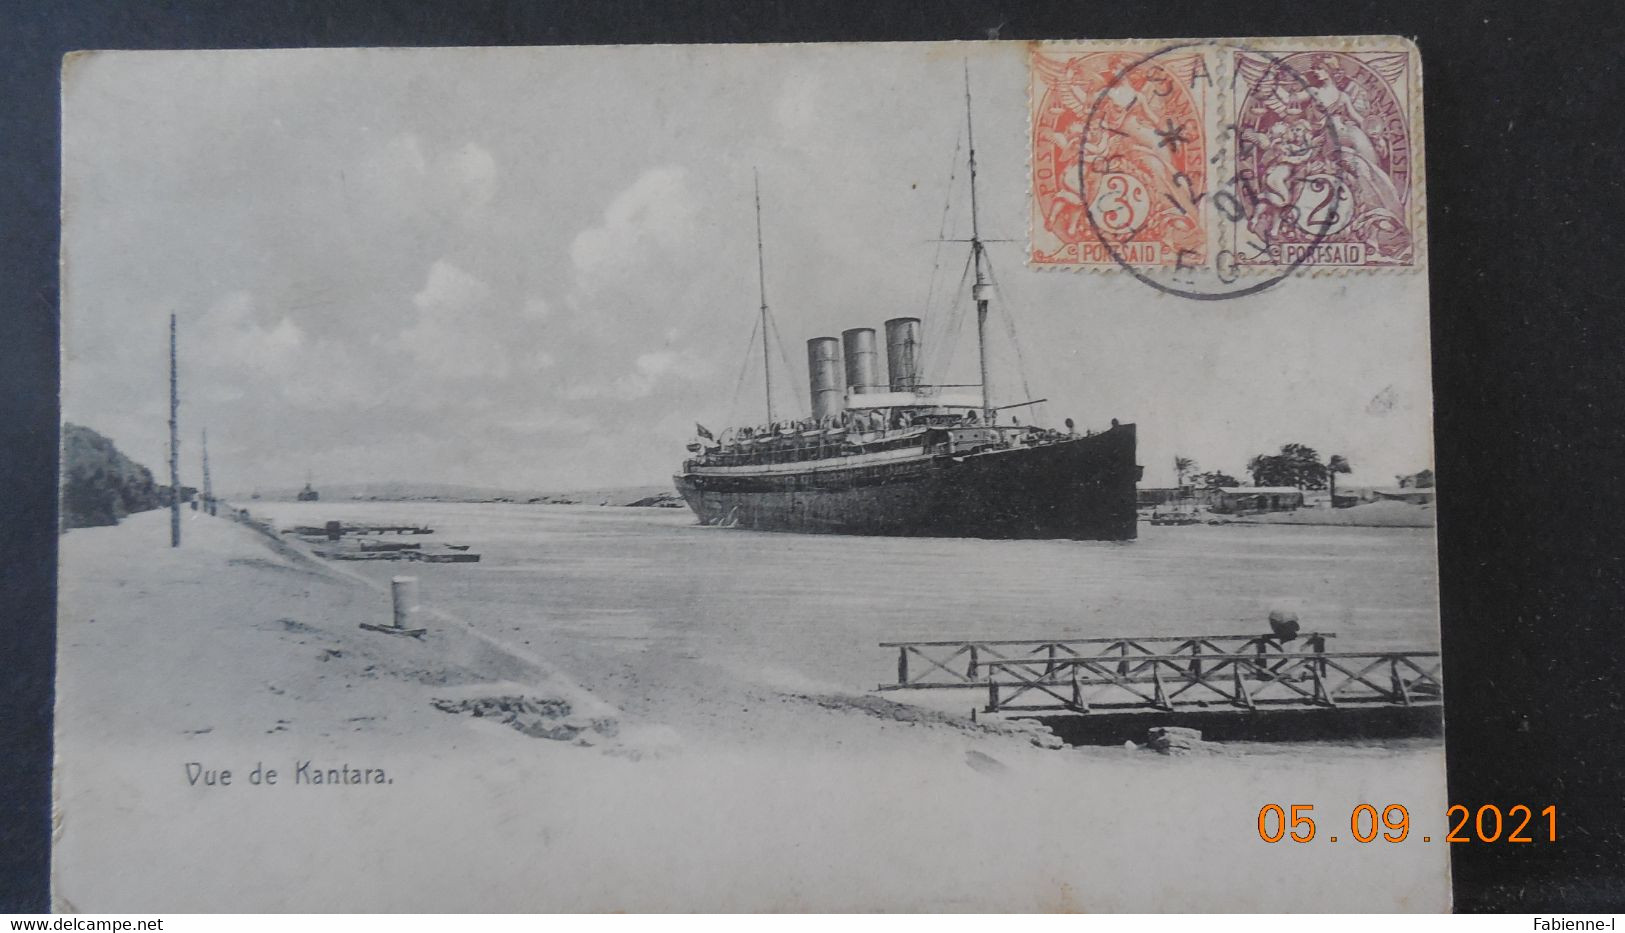 Carte Postale De 1907  à Destination De France Avec Cachet Et Timbres De Port Saïd - Lettres & Documents